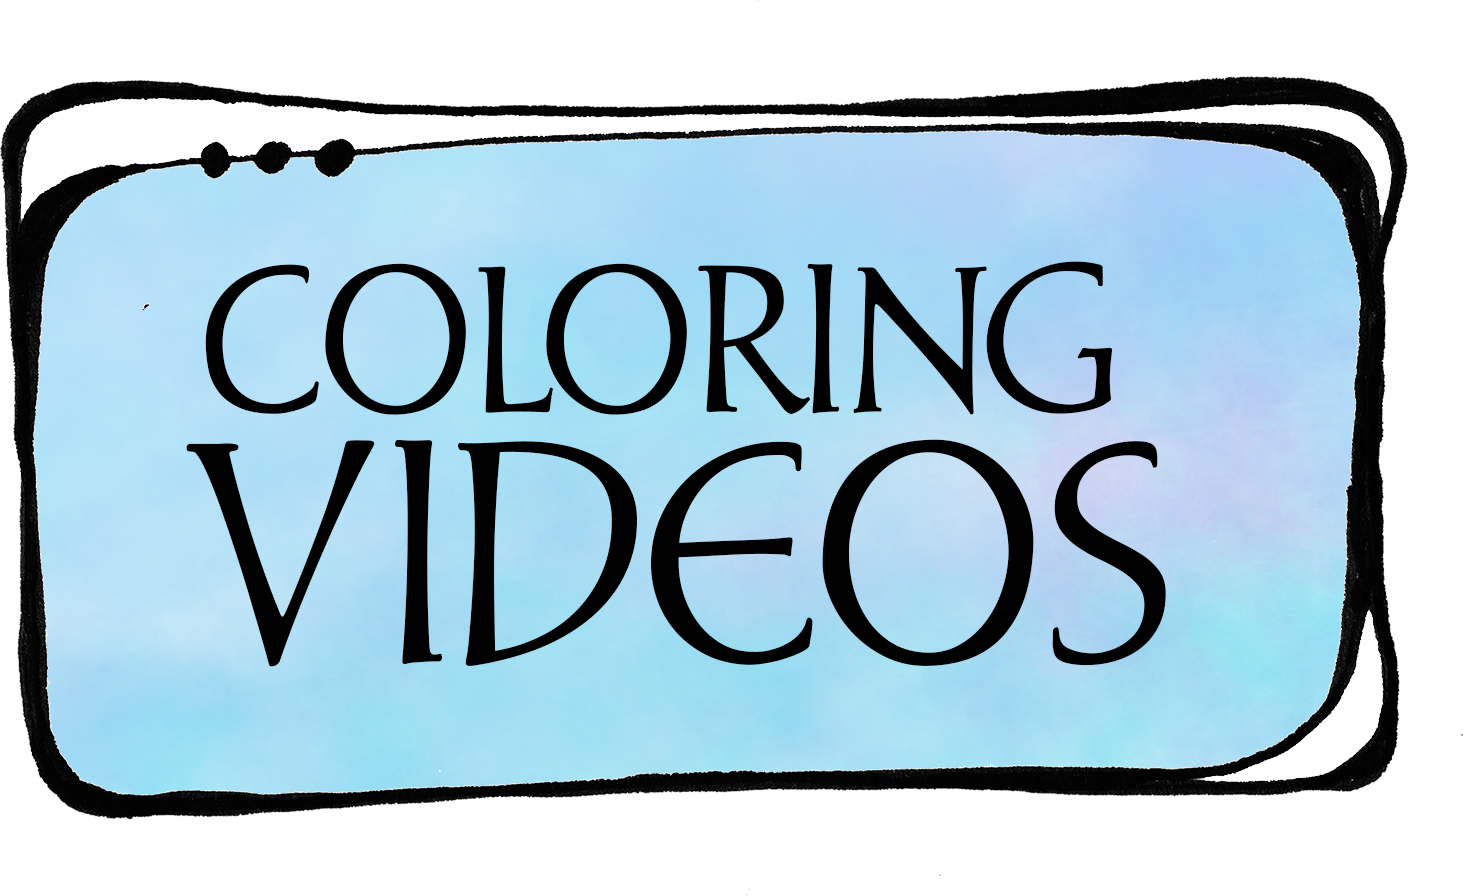 Coloring Videos